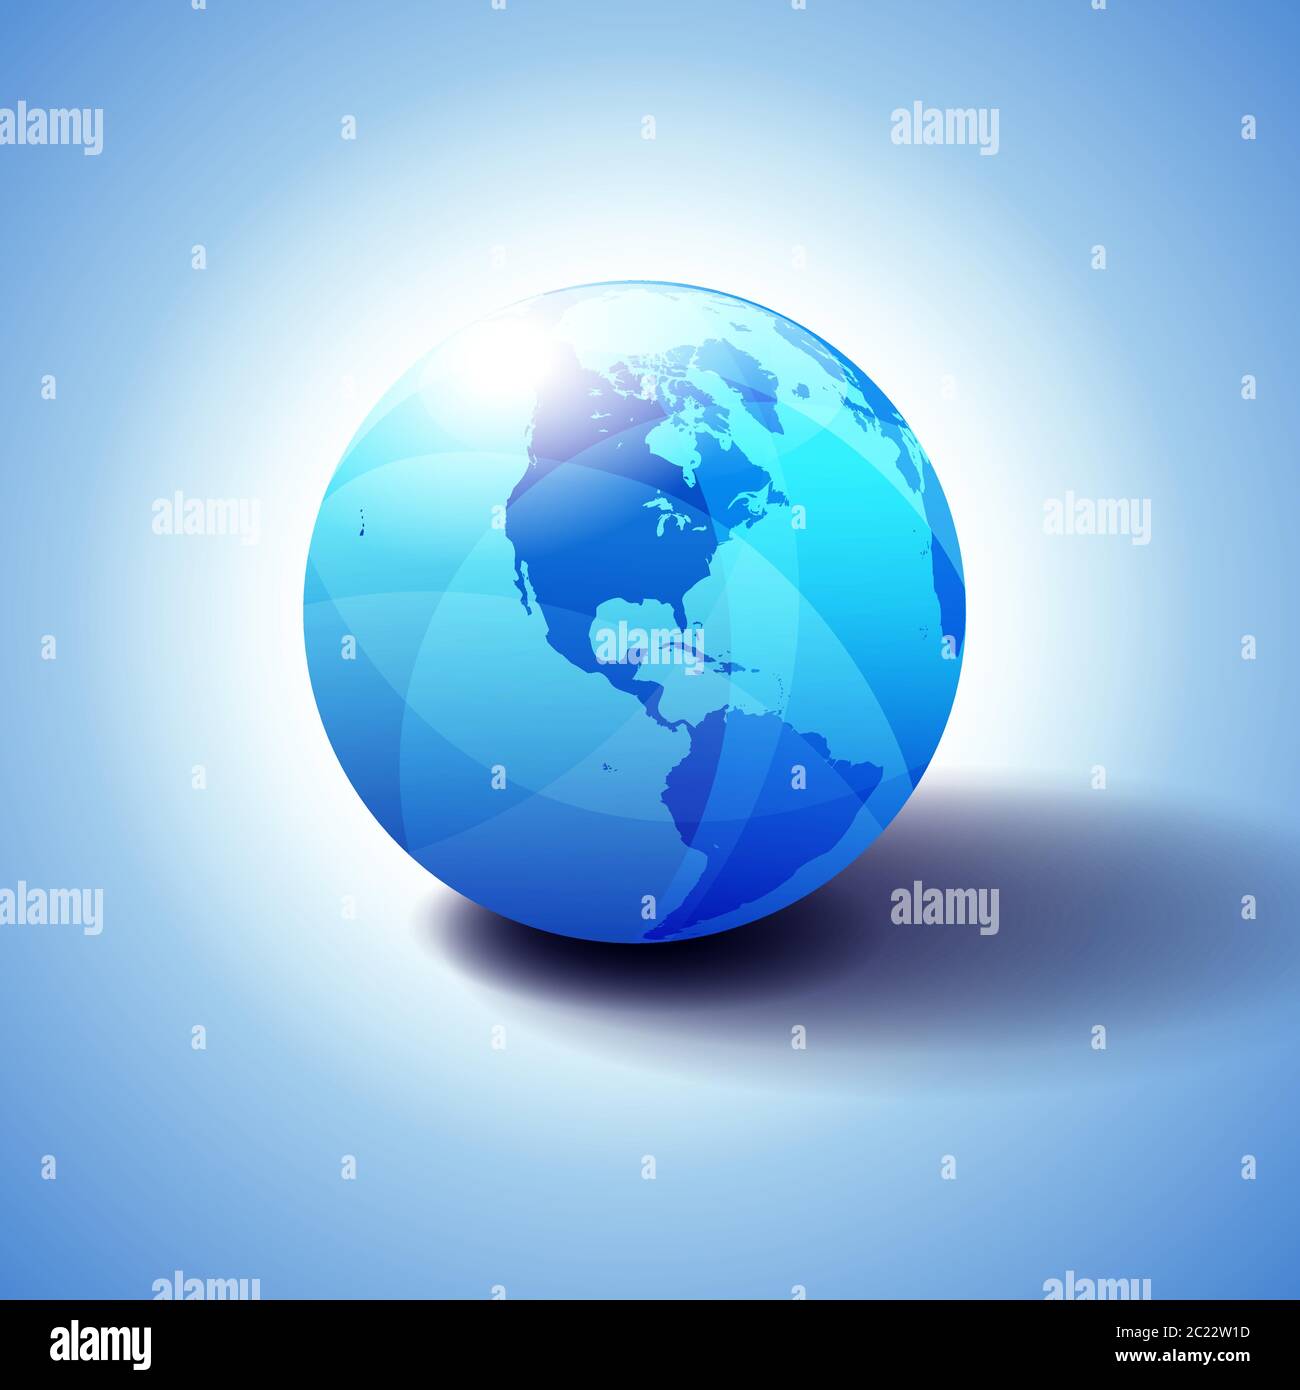 Nord- und Südamerika Hintergrund mit Globe Icon 3D Illustration, glänzende, glänzende Kugel mit Global Map in subtilen Blues, die ein transparentes Gefühl gibt. Stock Vektor